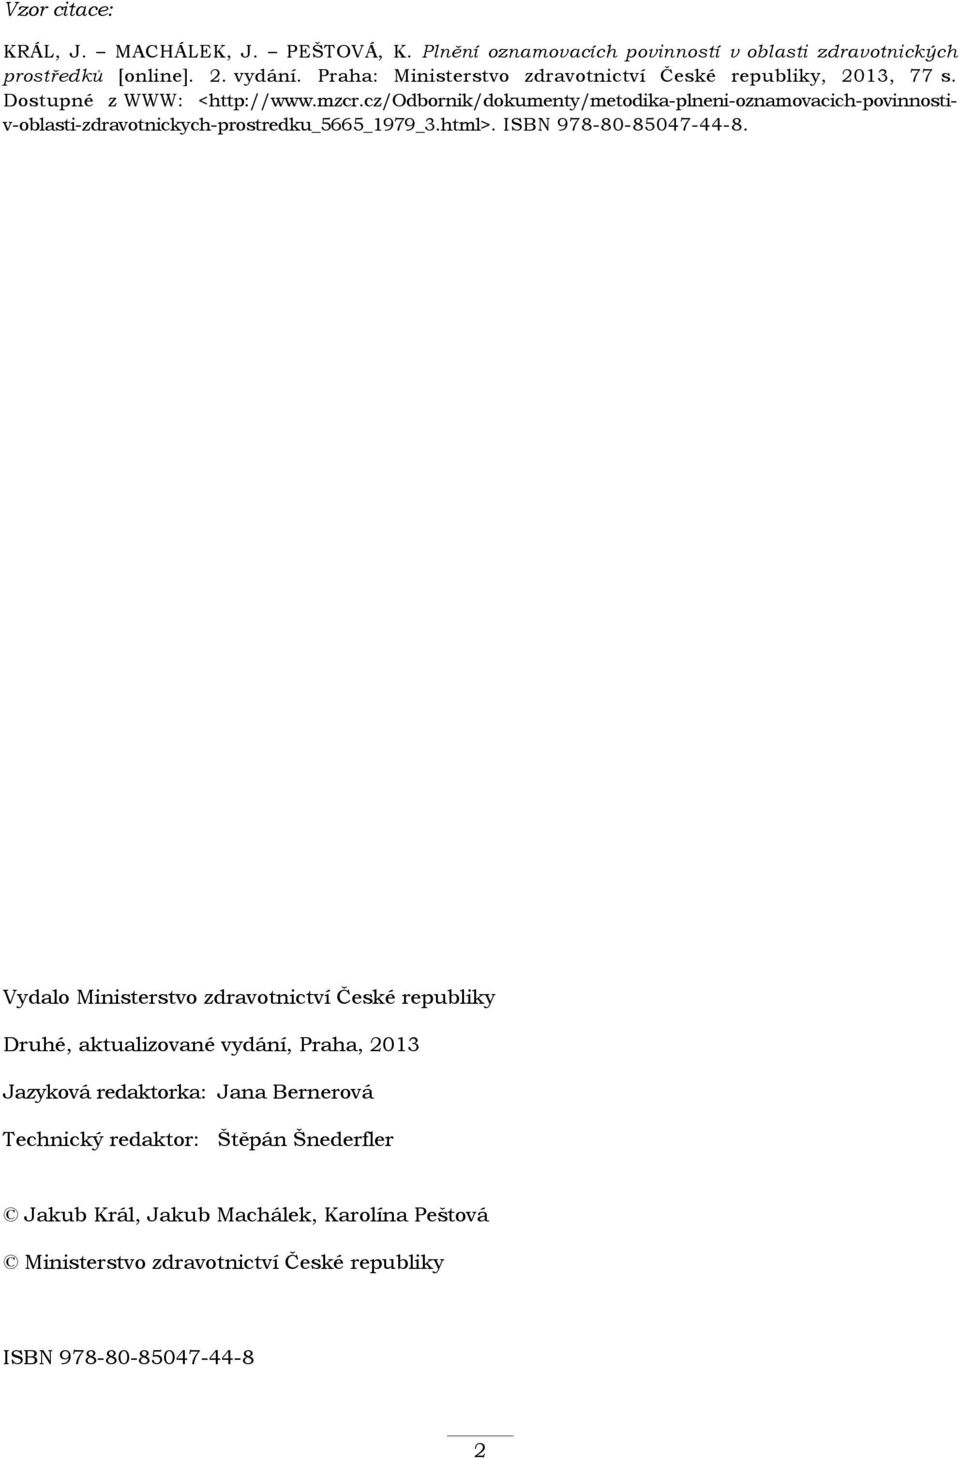 cz/odbornik/dokumenty/metodika-plneni-oznamovacich-povinnostiv-oblasti-zdravotnickych-prostredku_5665_1979_3.html>. ISBN 978-80-85047-44-8.